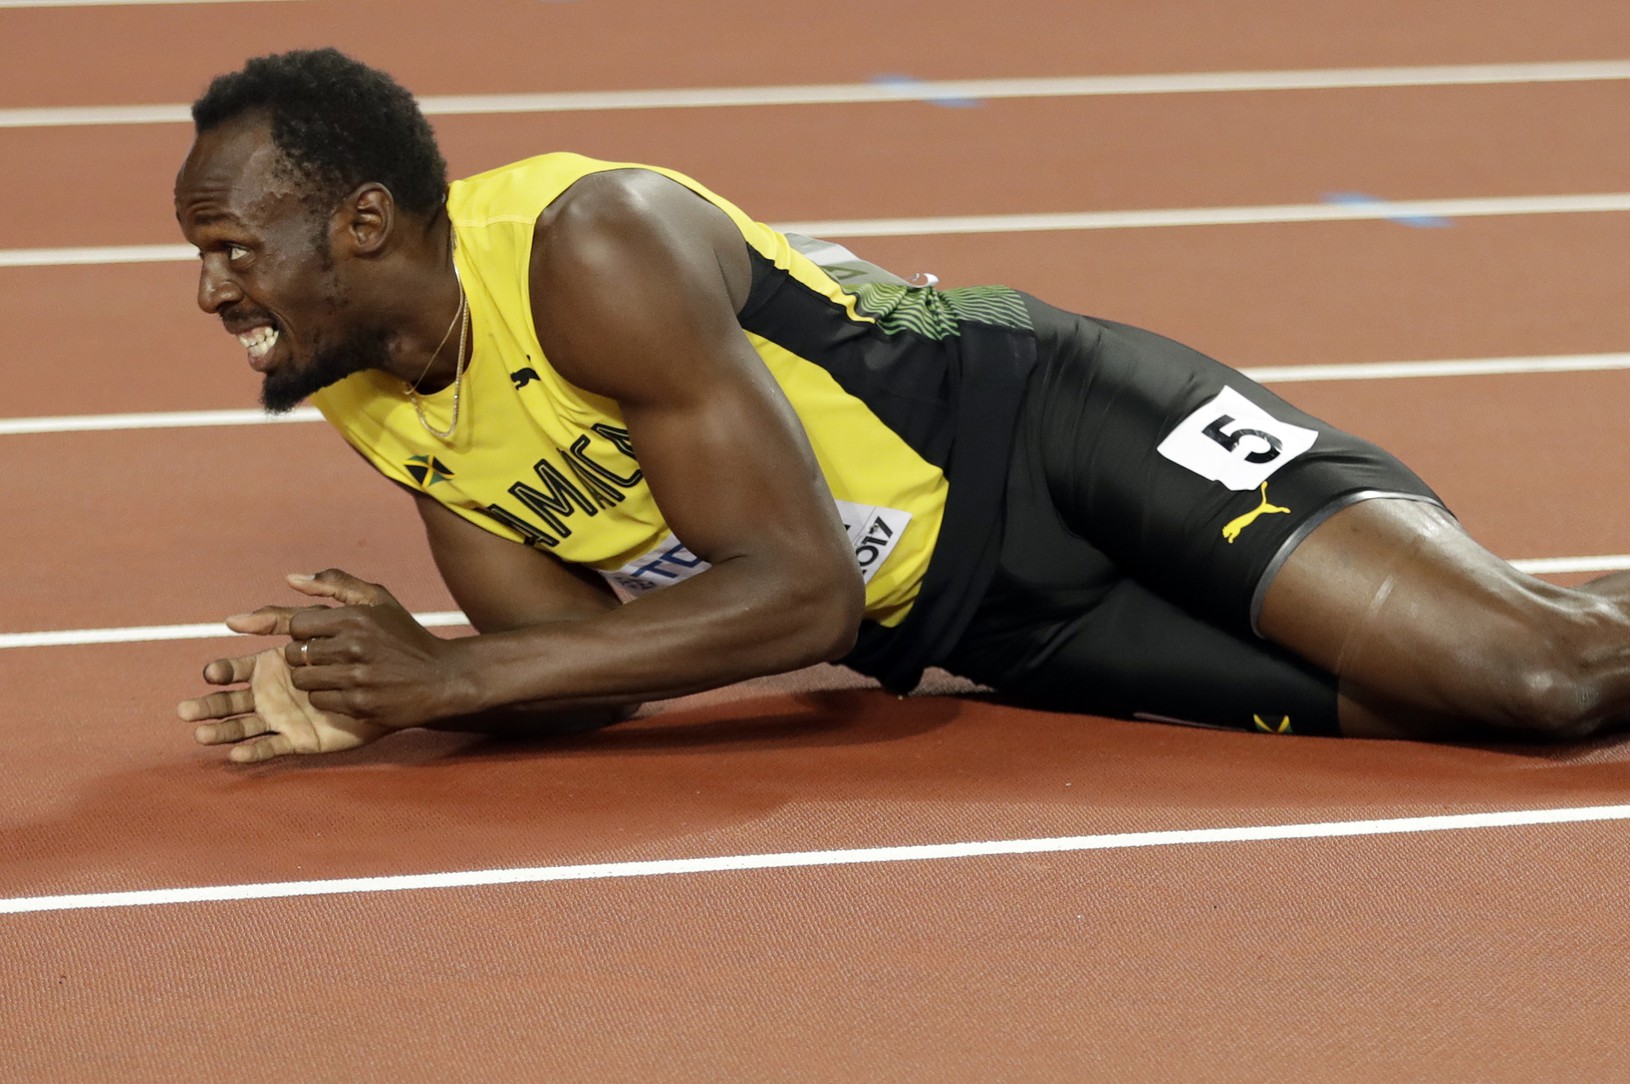 Zranený Usain Bolt zažil